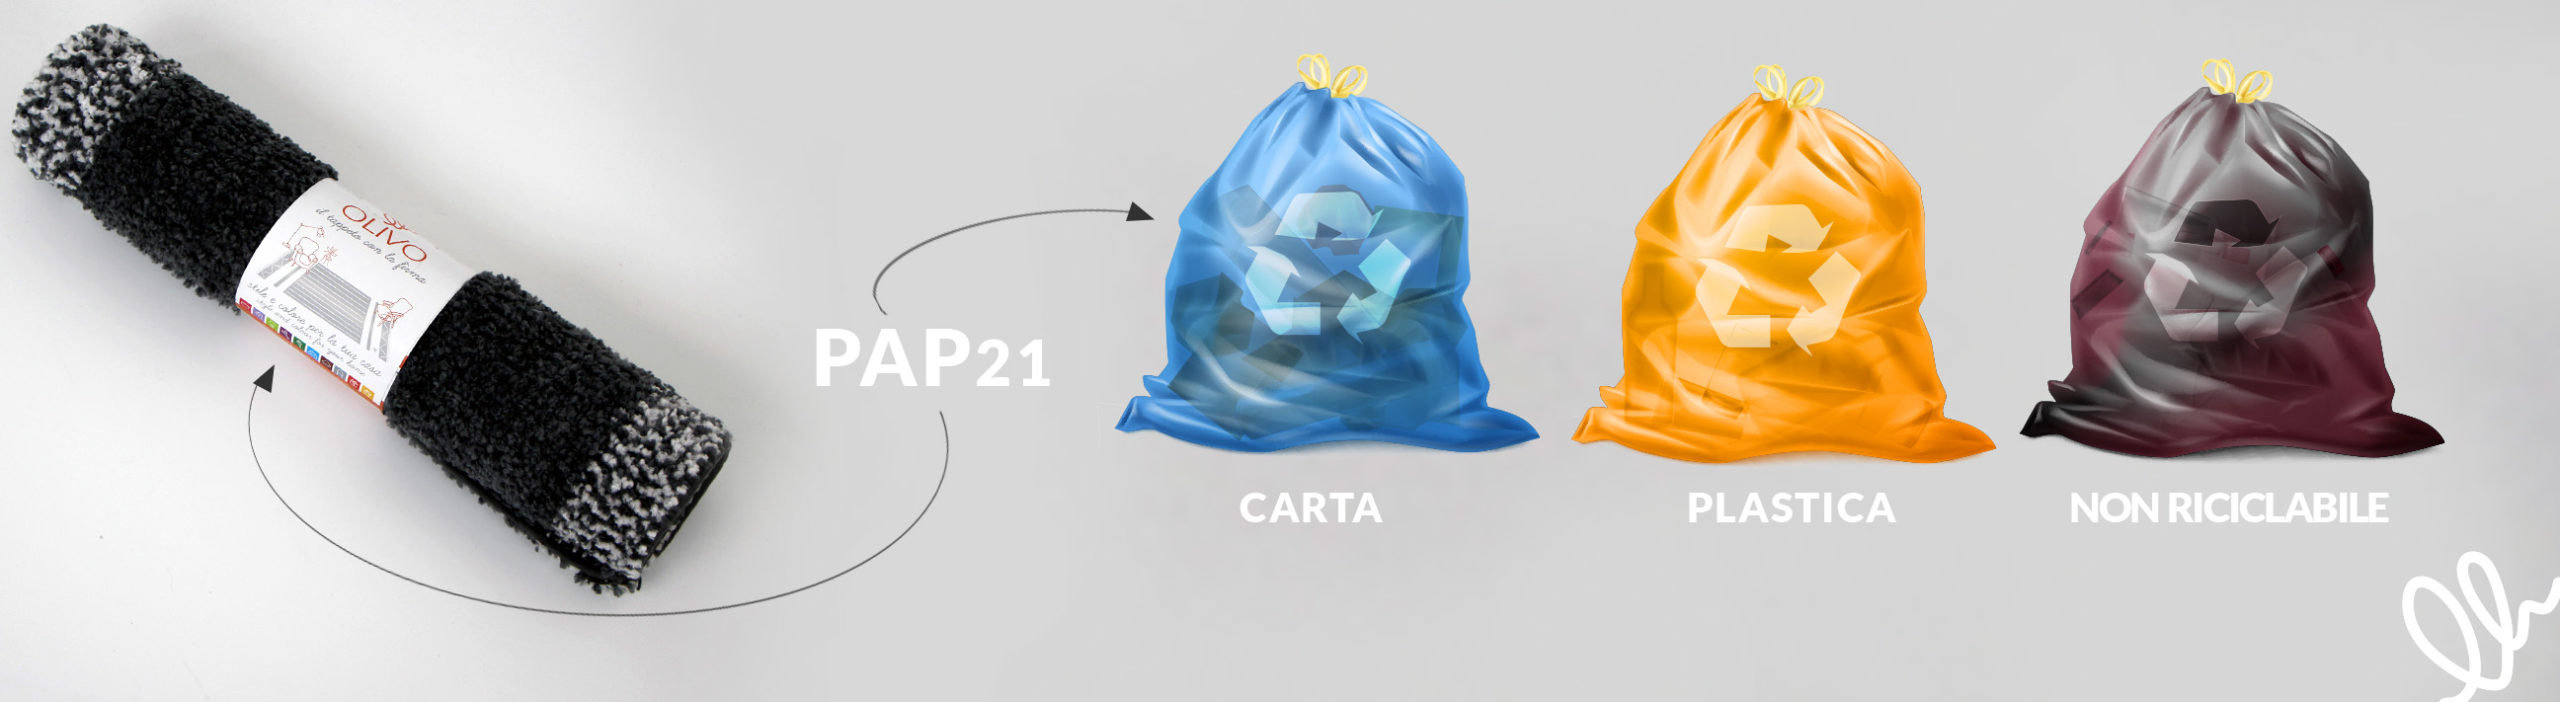 Olivo Tappeti indicazioni smaltimento packaging carta plastica